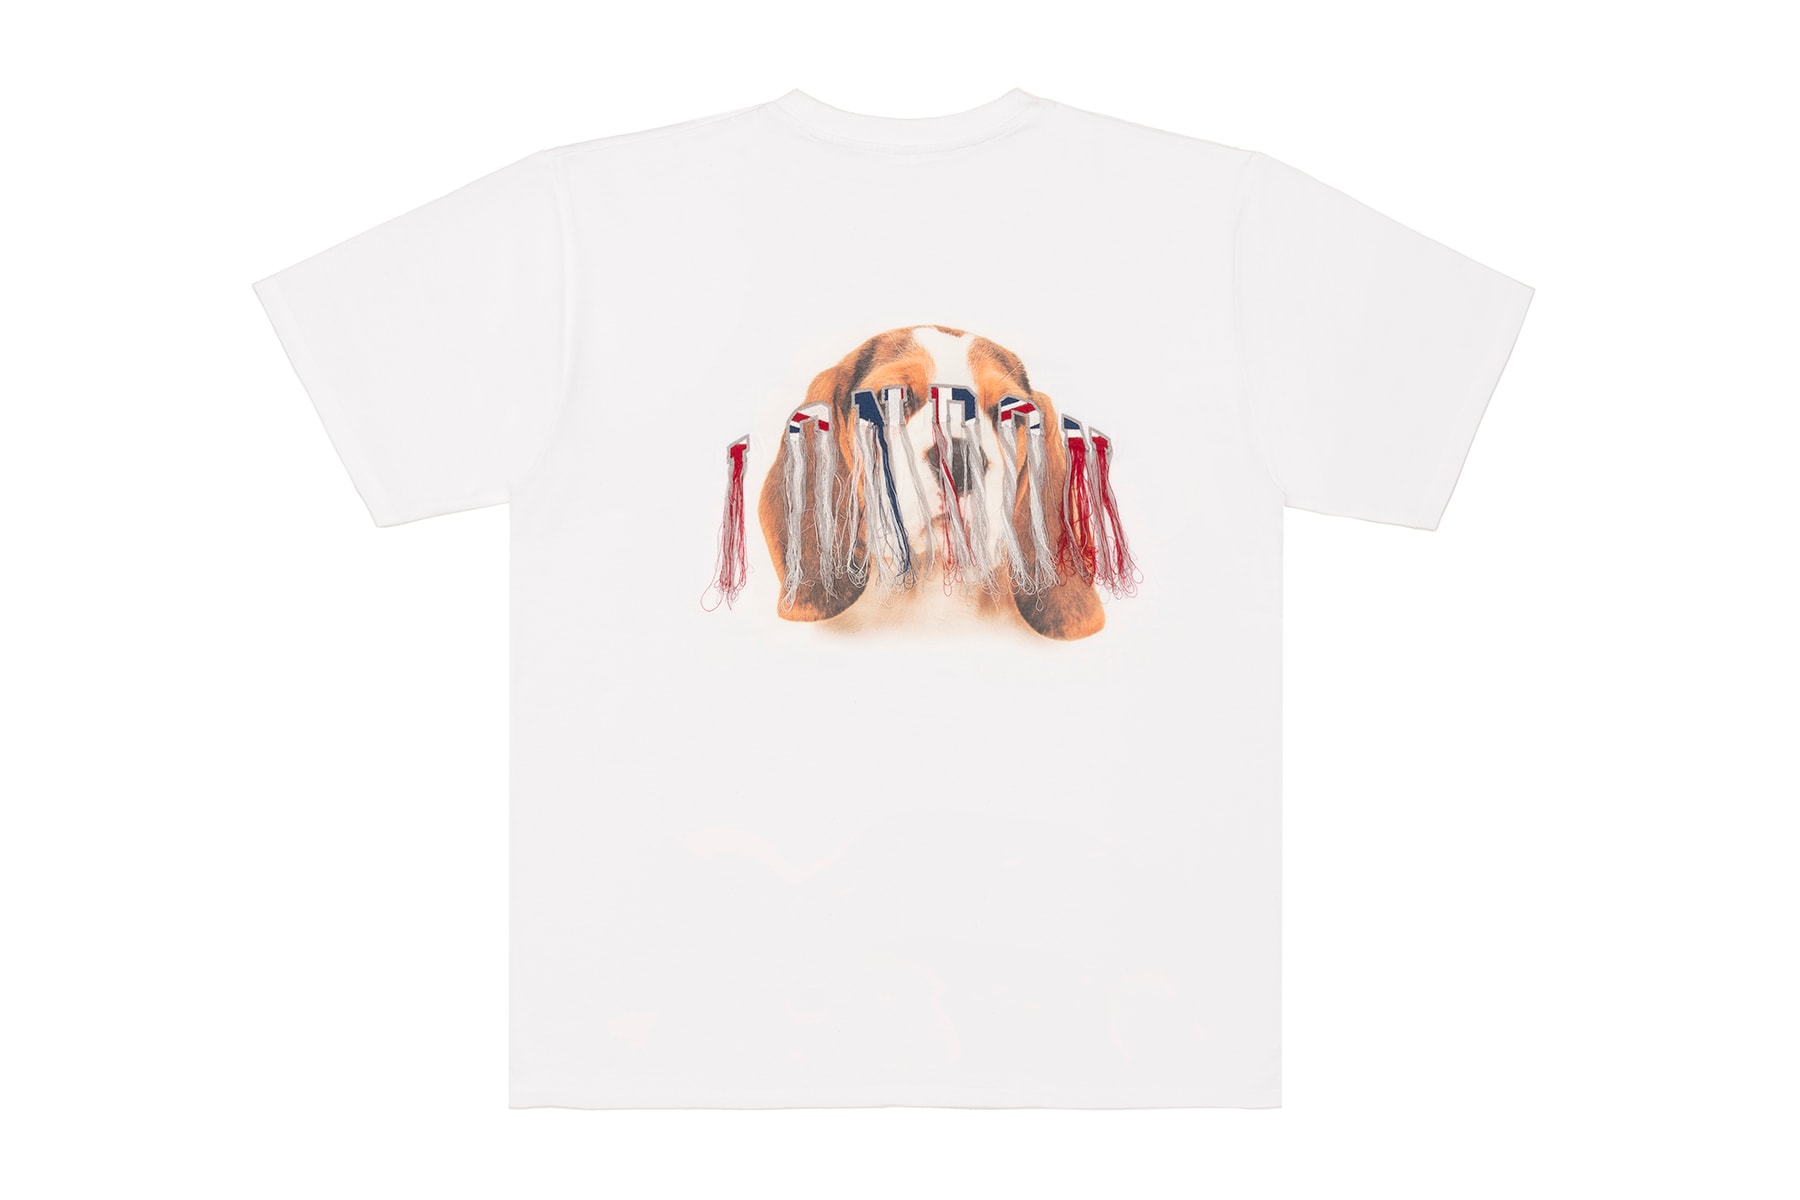 도버 스트릿 마켓 설날 한정판 개의 해 티셔츠 컬렉션 베이프 더블렛 나이키랩 노아 노 베이컨시 인 스투시 언더커버 2018 Chinese New Year Dover Street Market Year of the Dog t-shirts limited edition A Bathing Ape Bianca Chandon Doublet NikeLab No Vacancy Inn Noah Richardson Snoopy Undercover